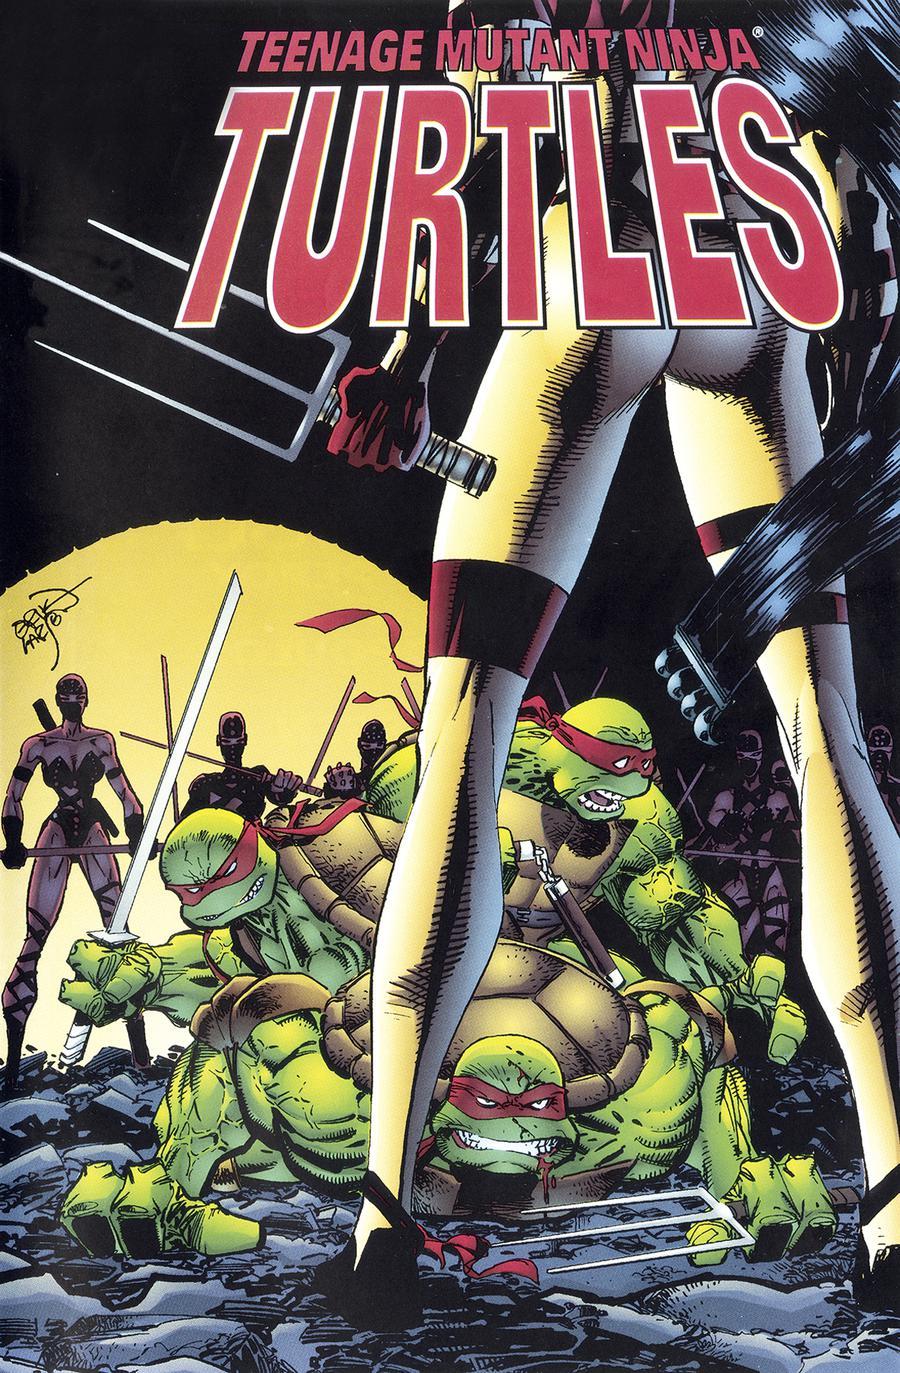 Teenage Mutant Ninja Turtles Urban Legends Vol. 1 #2